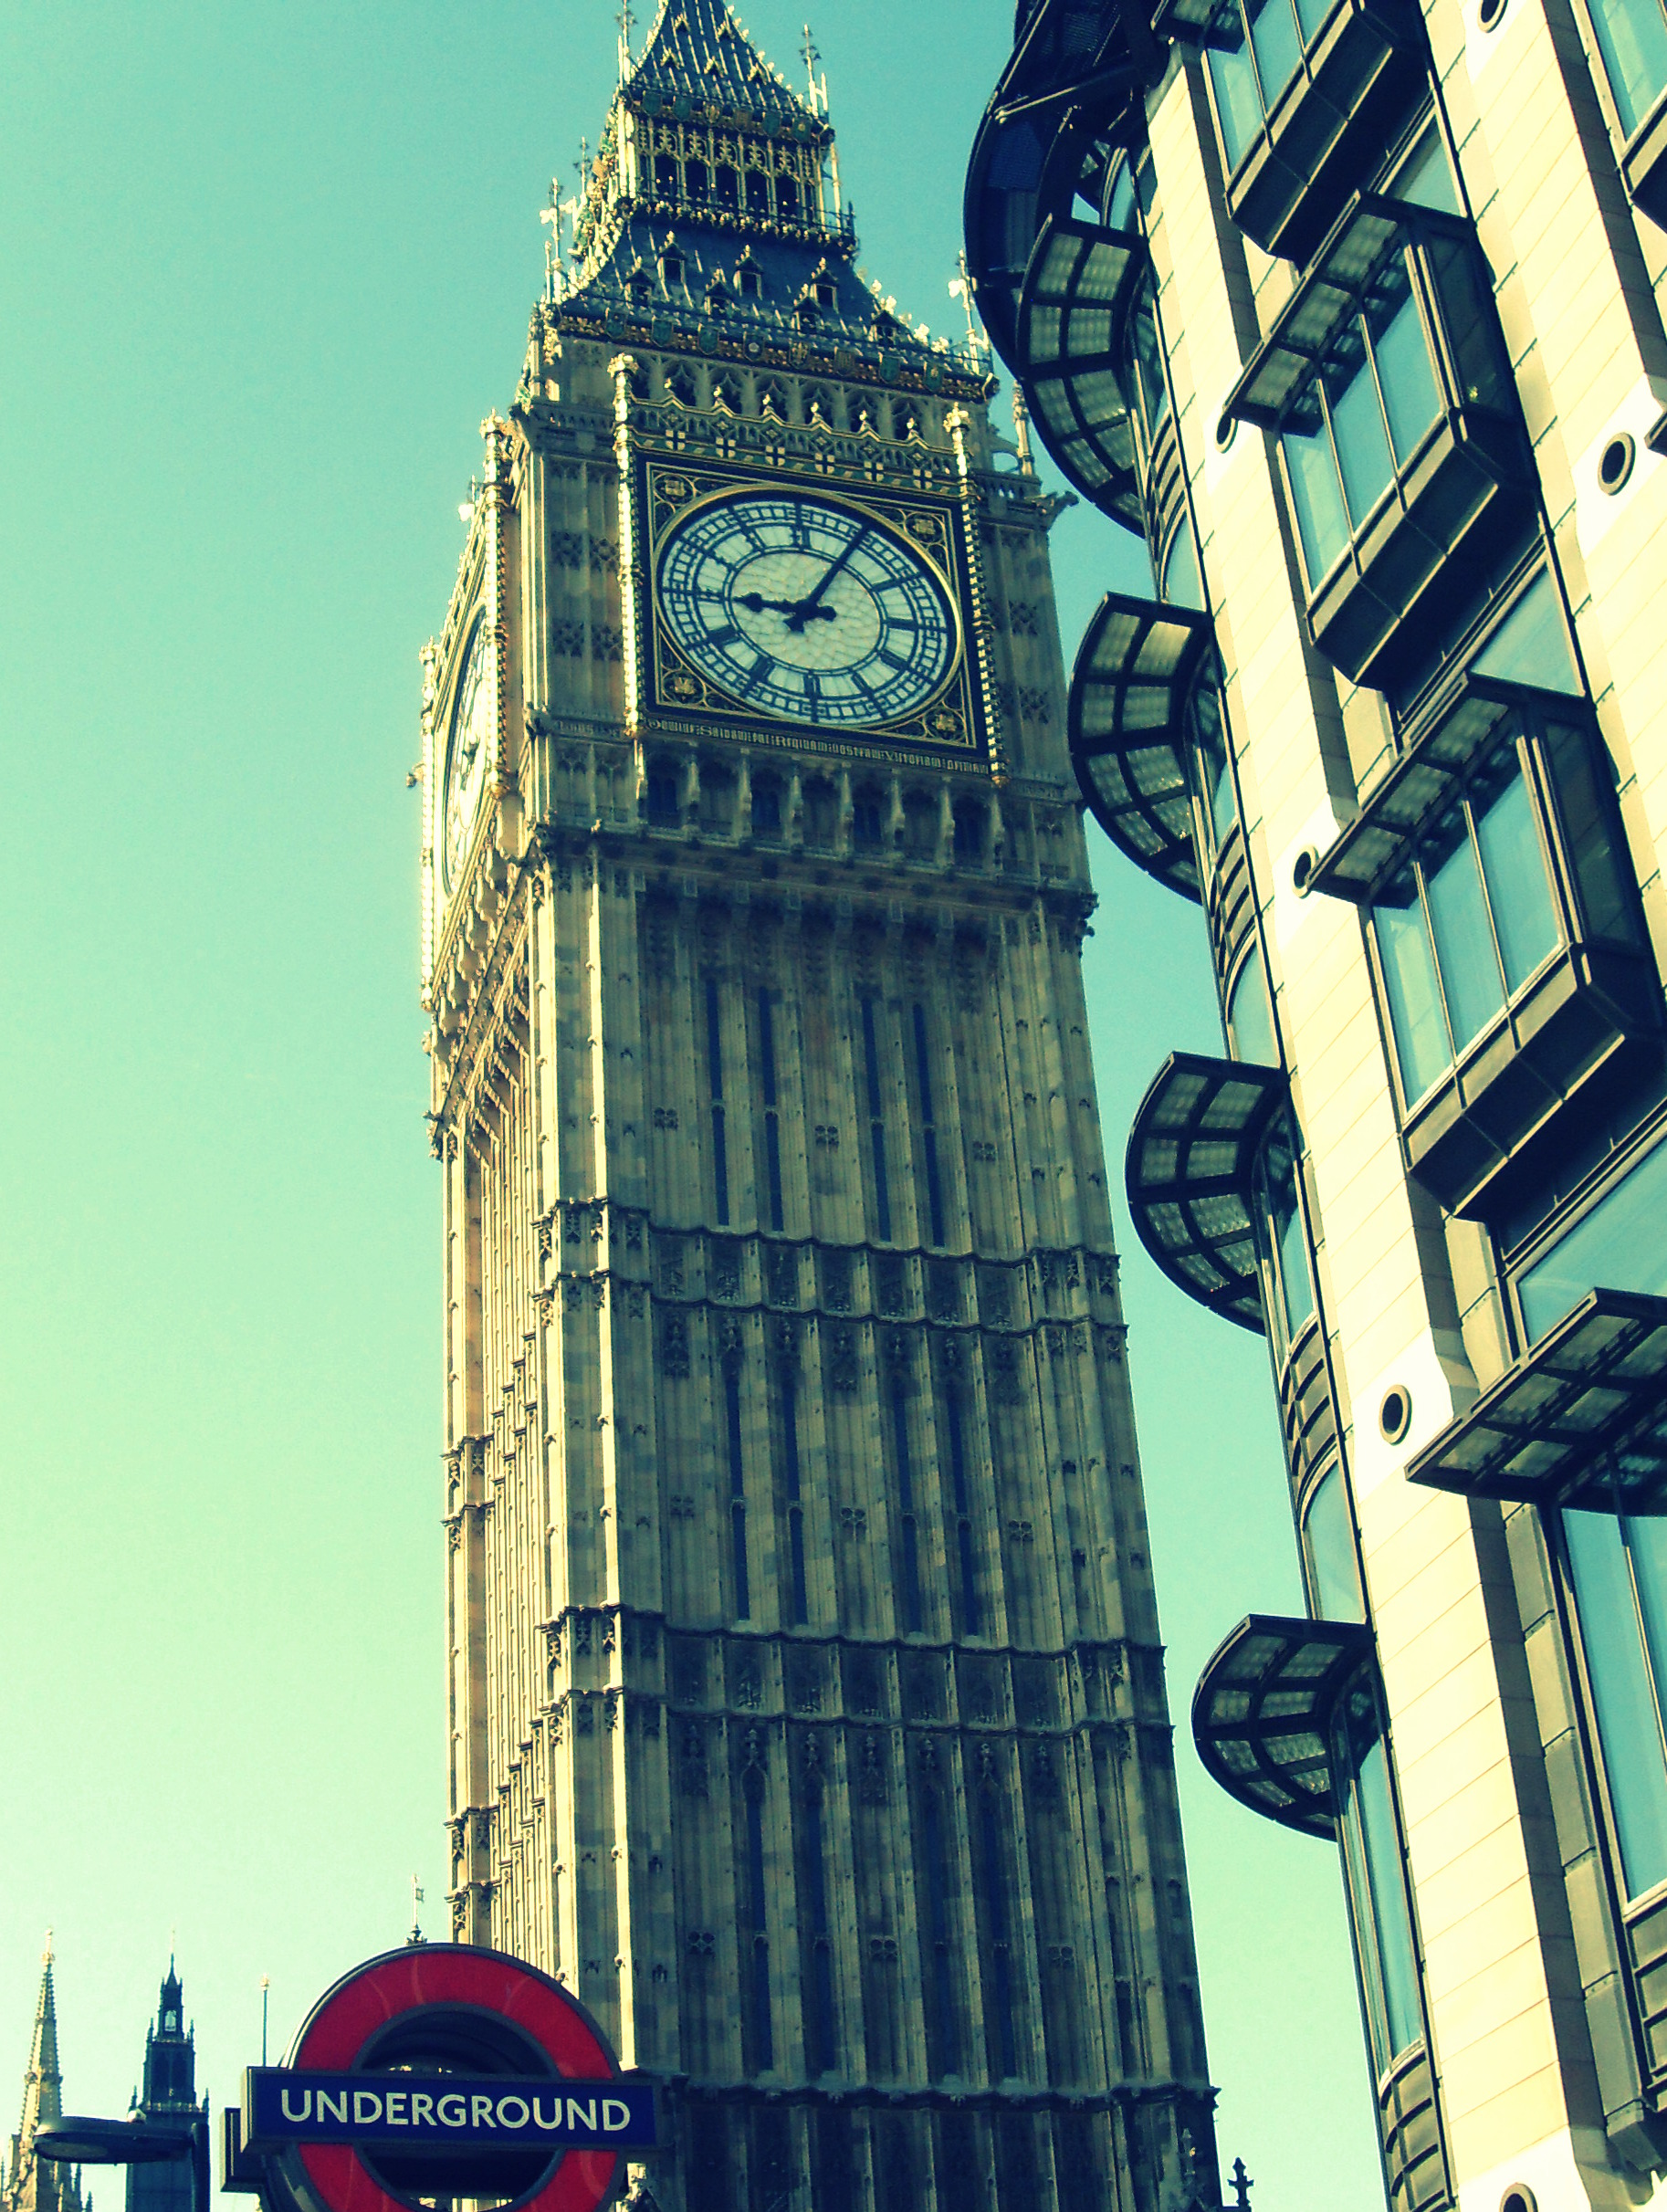 General 1826x2423 London Big Ben England landmark UK Europe clock tower